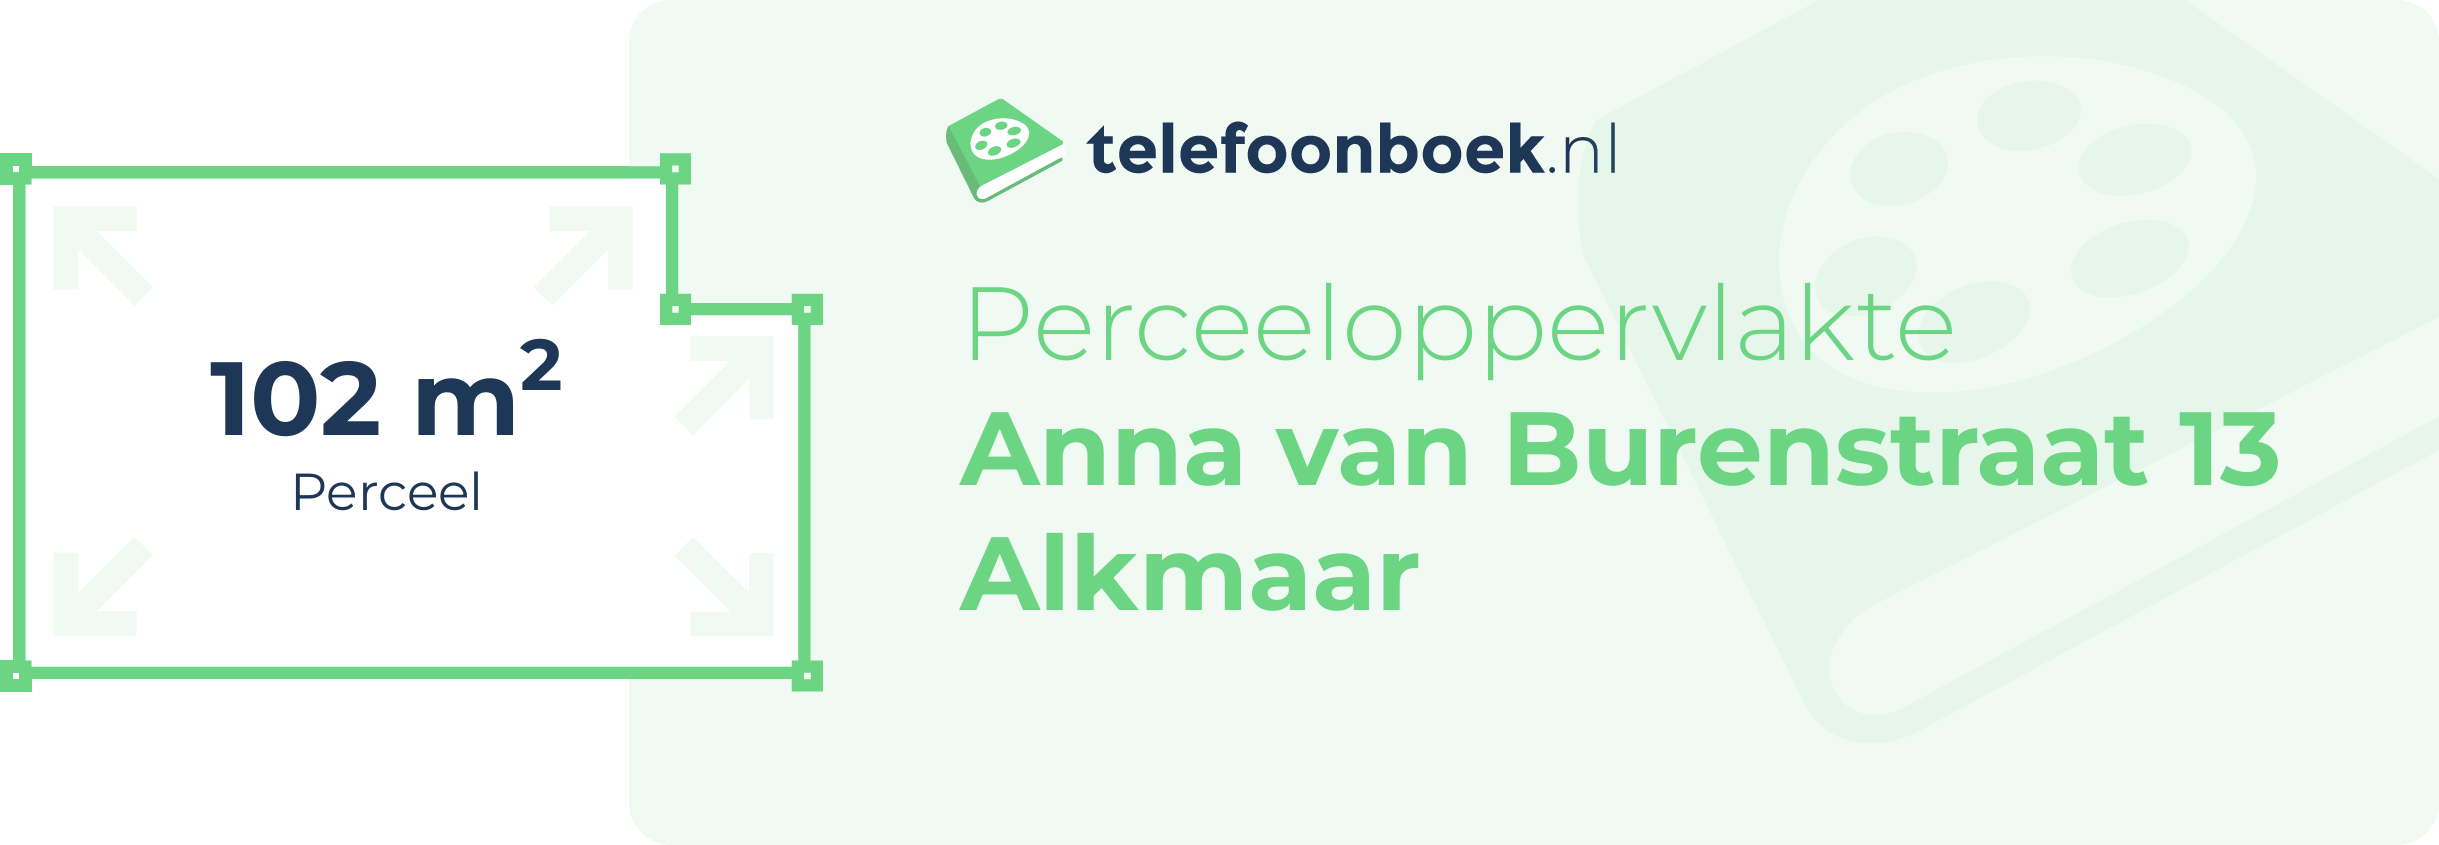 Perceeloppervlakte Anna Van Burenstraat 13 Alkmaar